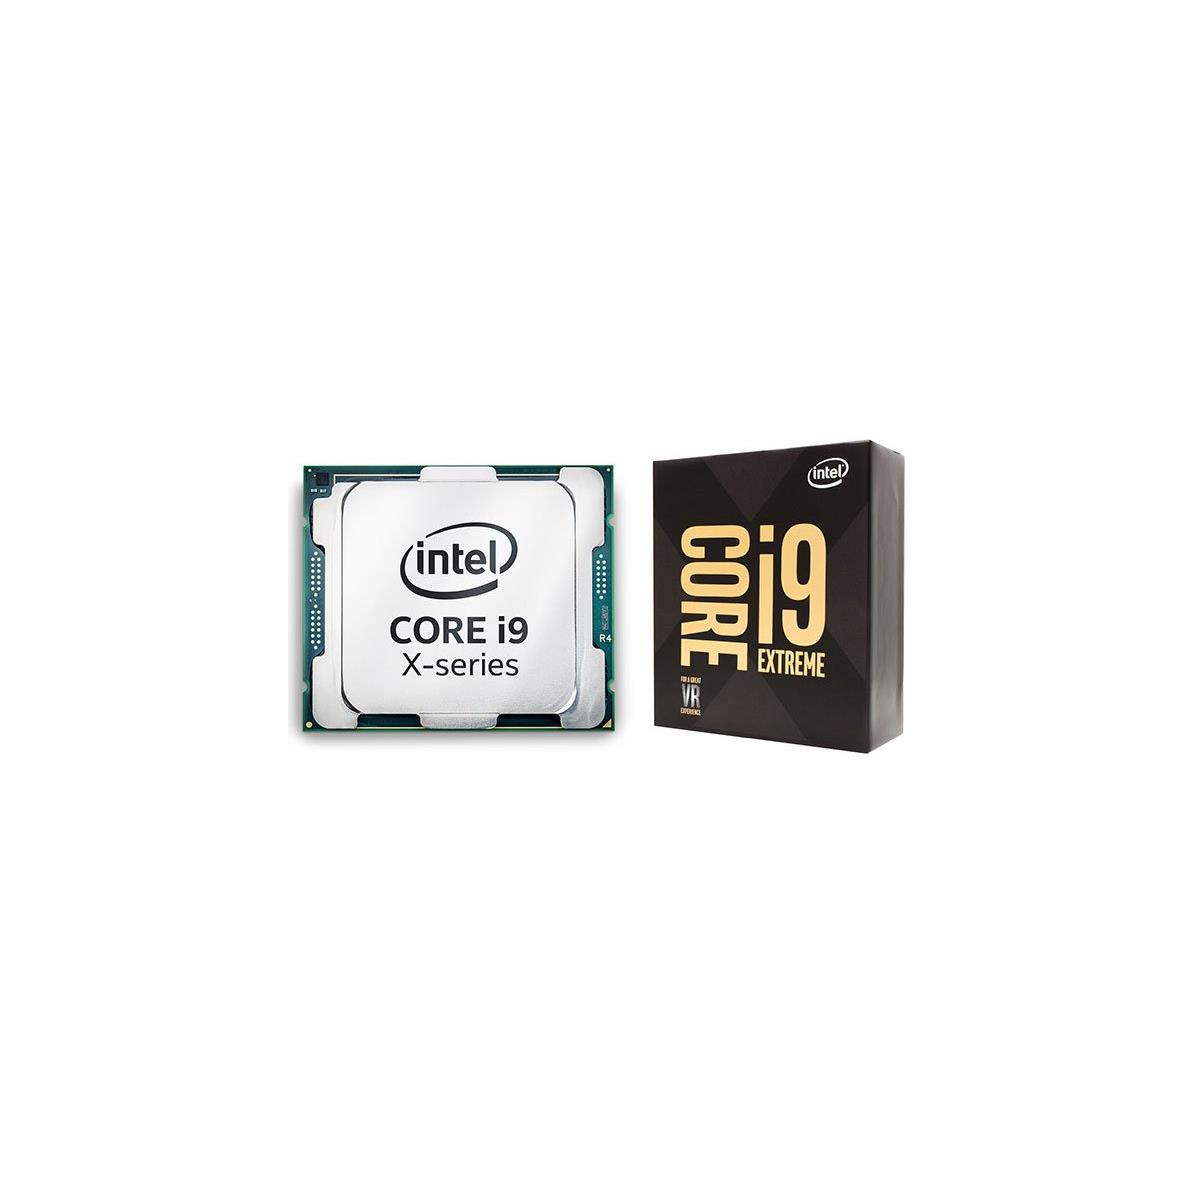 Intel Skylake-X Family Full Specs Leak, Core i9-7980XE 18-Core